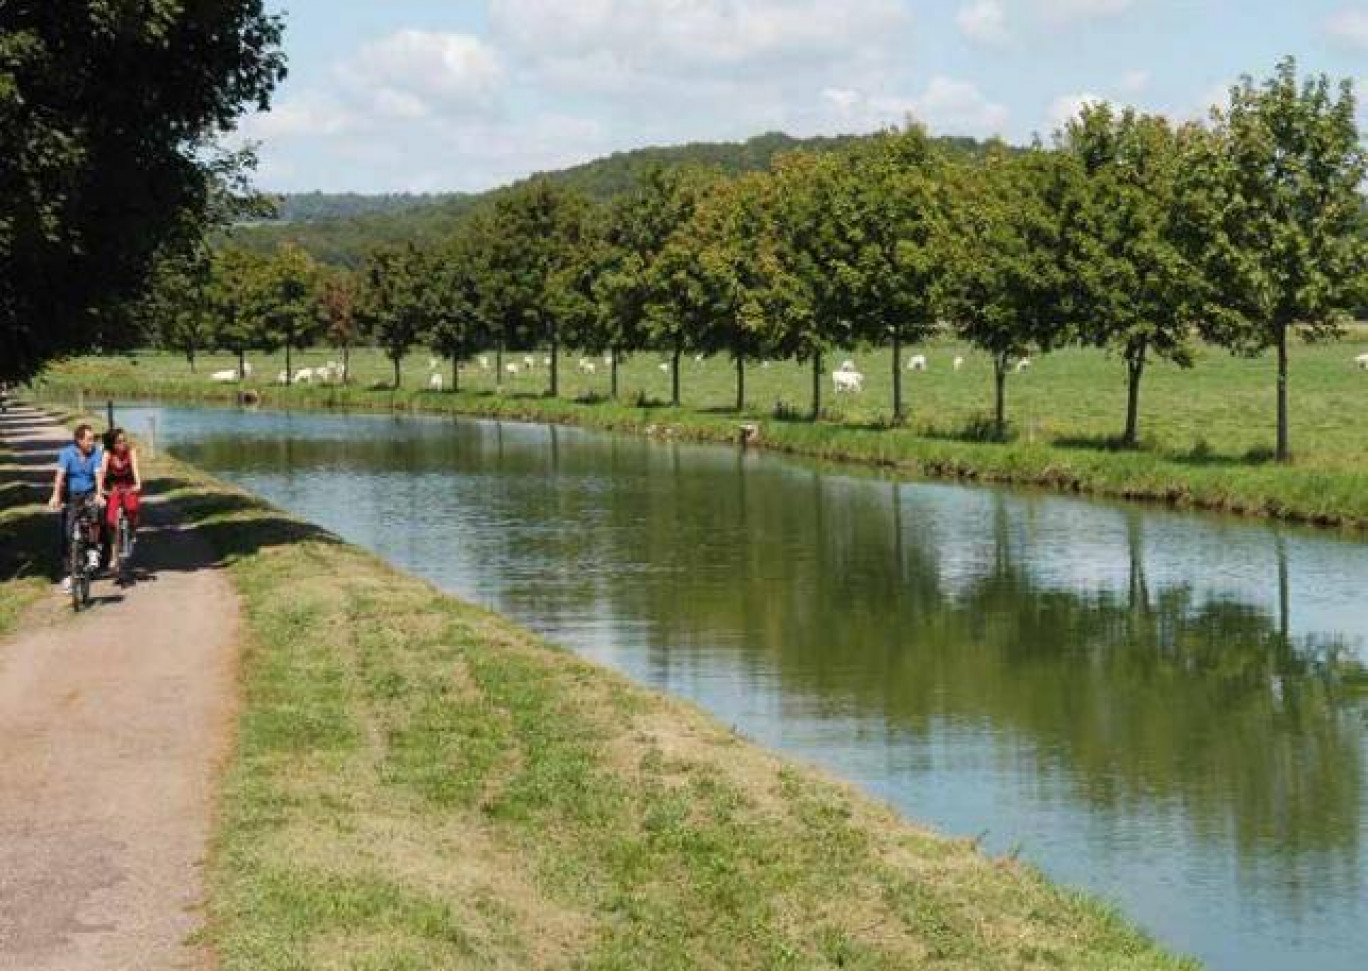 La France est devenue la deuxième destination mondiale du tourisme à vélo. Environ 12 000 km de véloroutes et voies vertes sont aménagées avec de véritables itinéraires, comme le long du canal de Bourgogne.